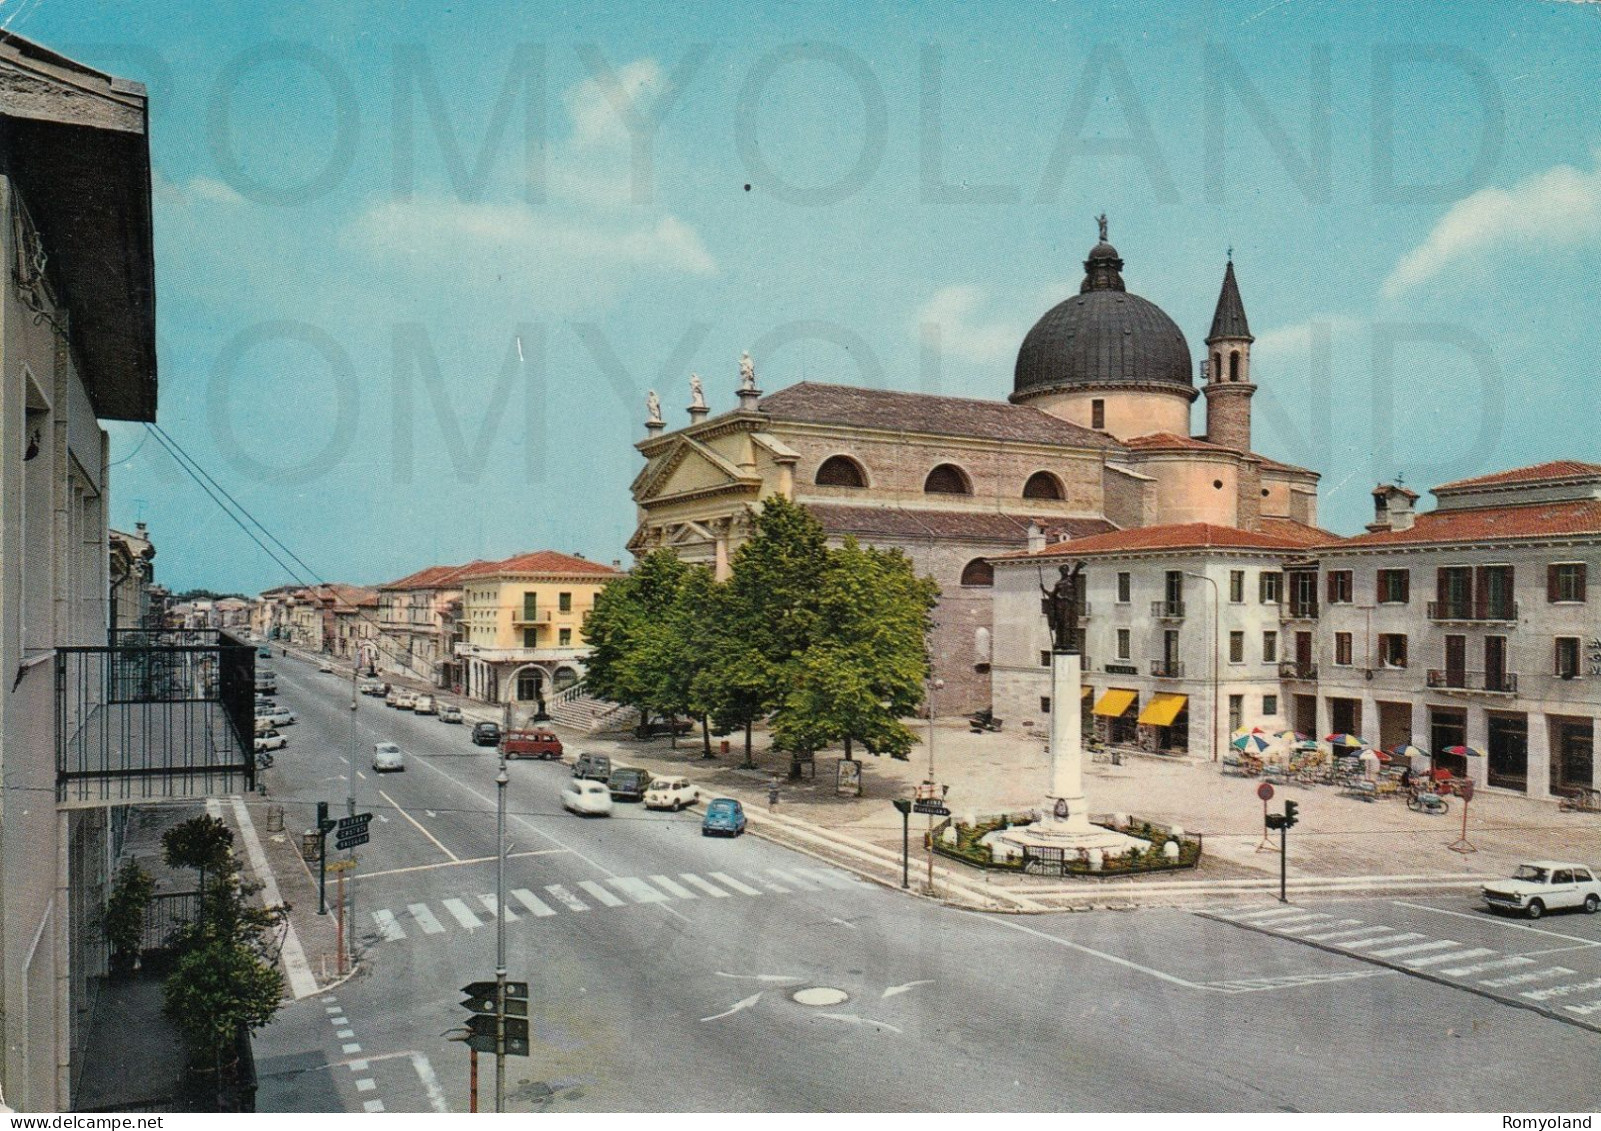 CARTOLINA  C14 VILLAFRANCA,VERONA,VENETO-PIAZZA PAPA GIOVANNI-MEMORIA,CULTURA,RELIGIONE,BELLA ITALIA,VIAGGIATA 1970 - Verona